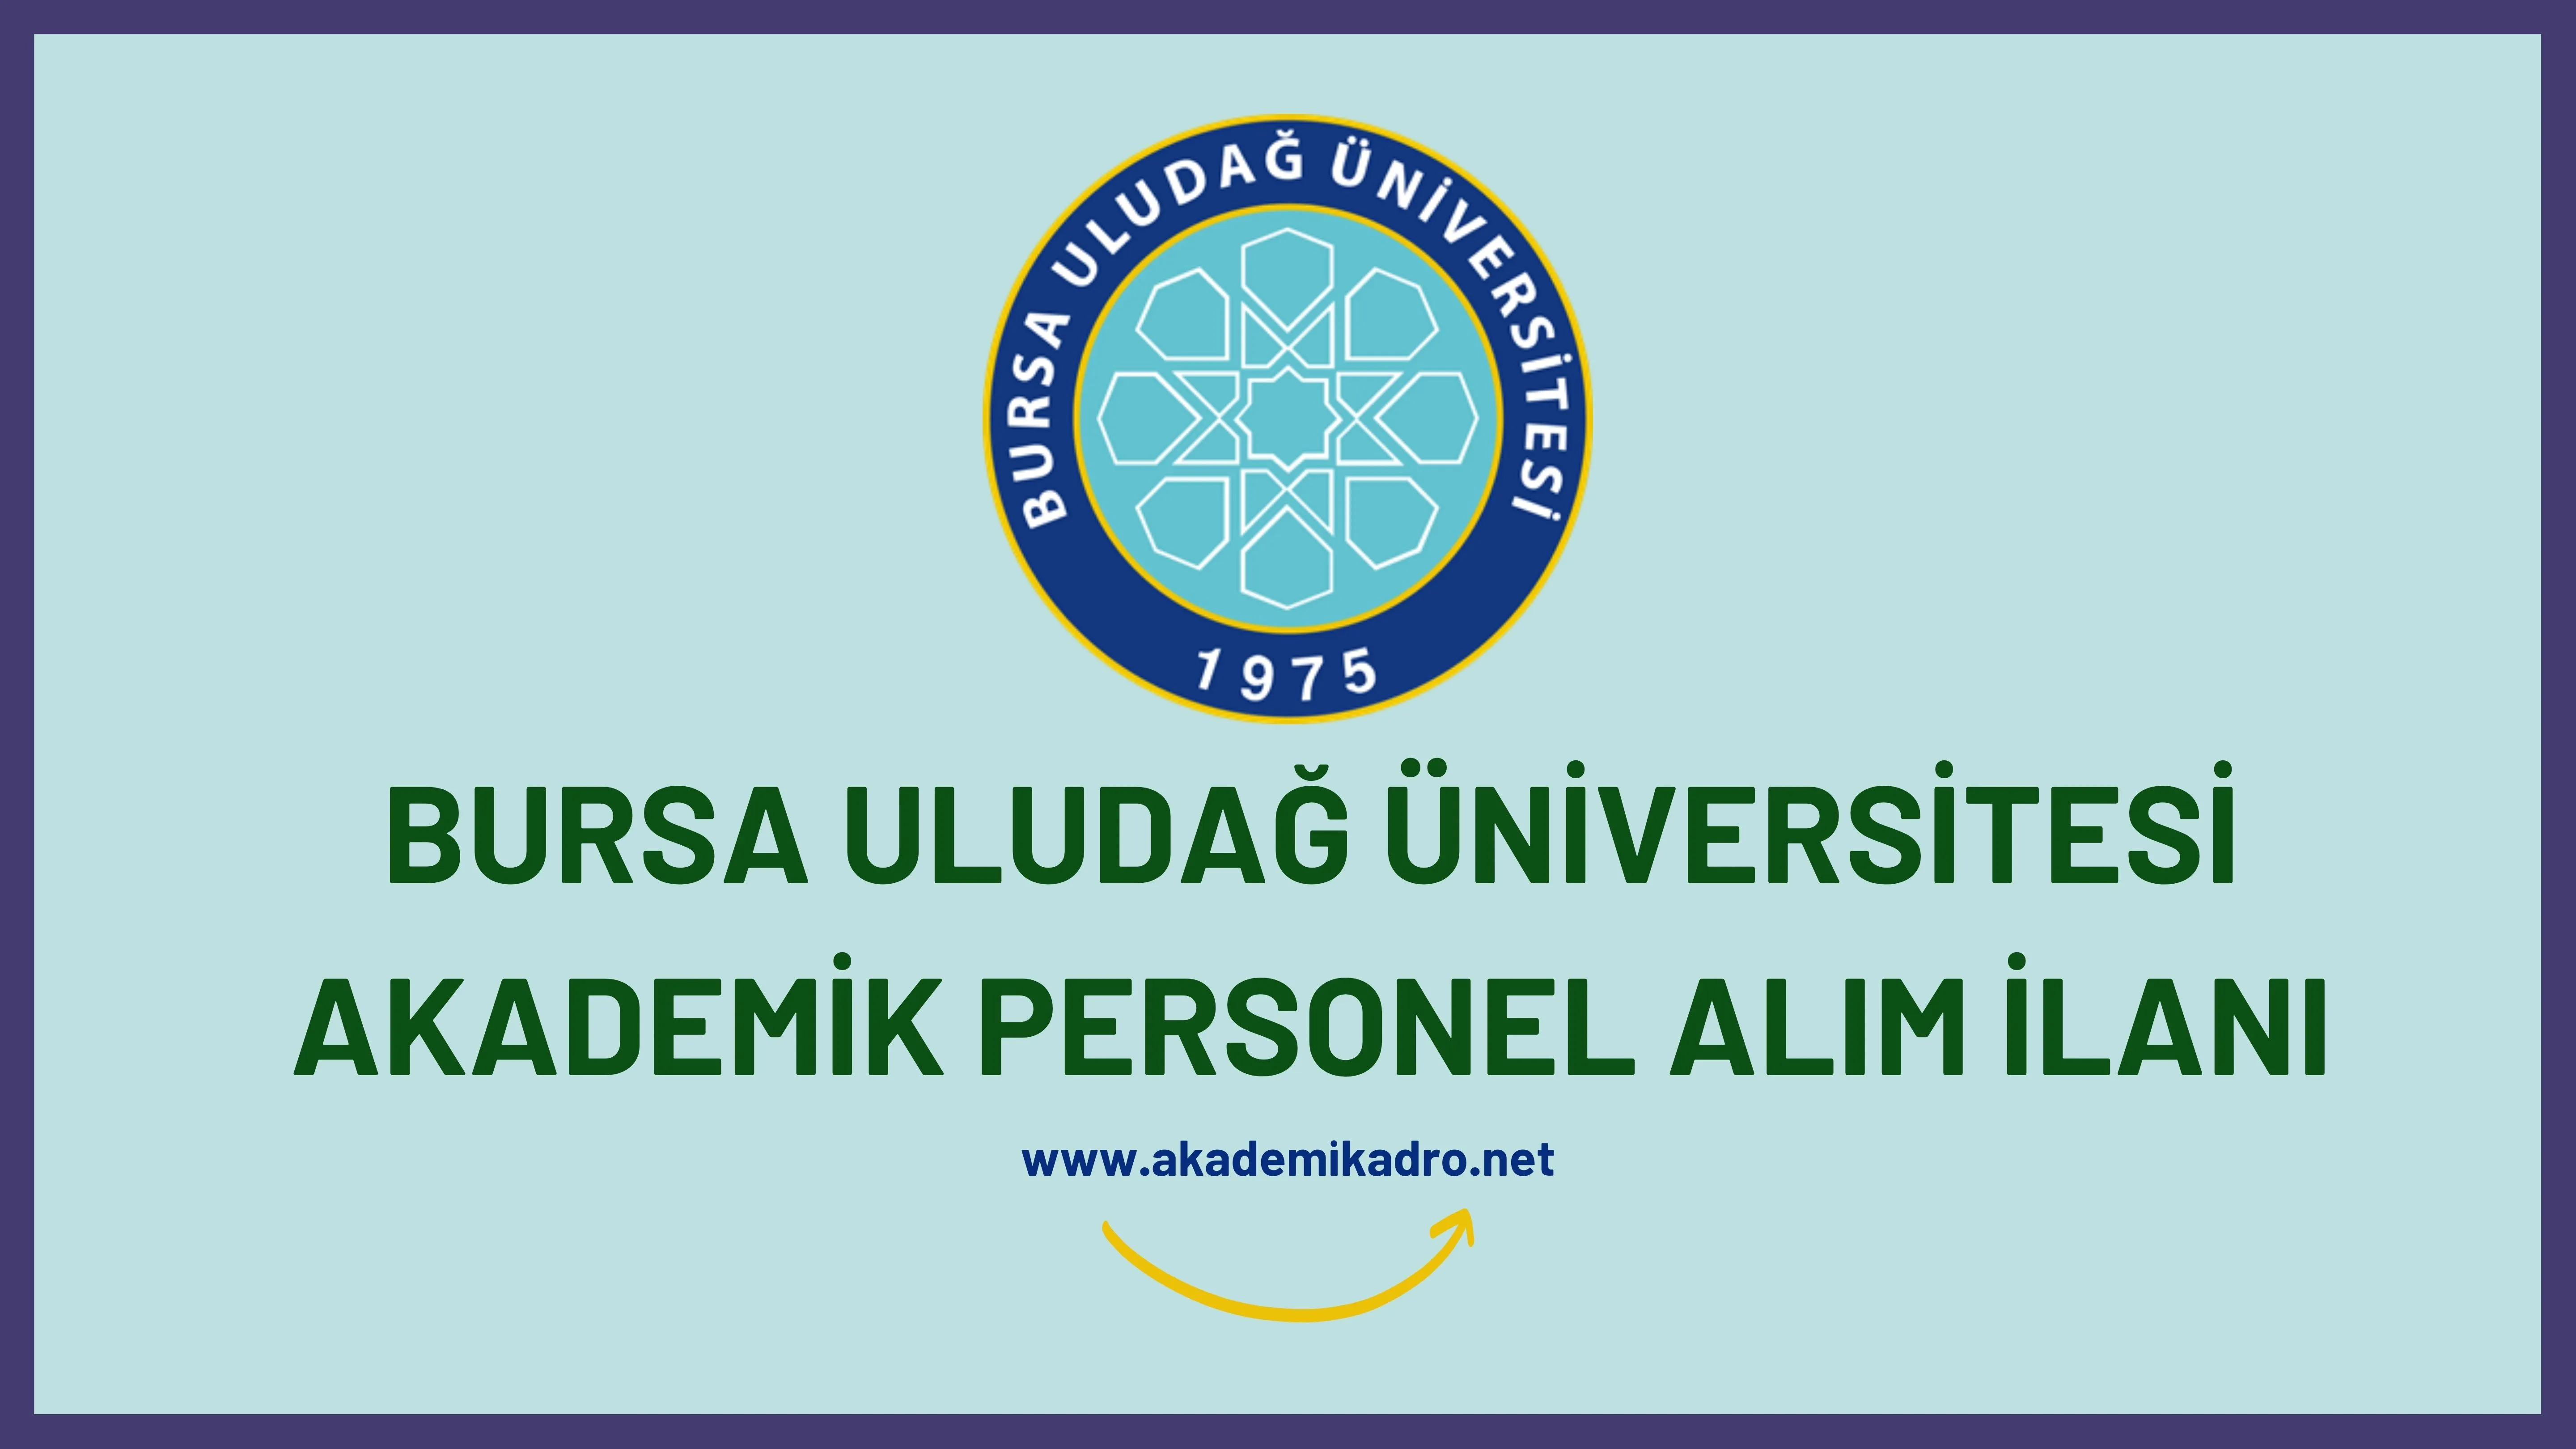 Bursa Uludağ Üniversitesi birçok alandan 15 Öğretim üyesi alacak. Son başvuru tarihi 09 Ocak 2023.